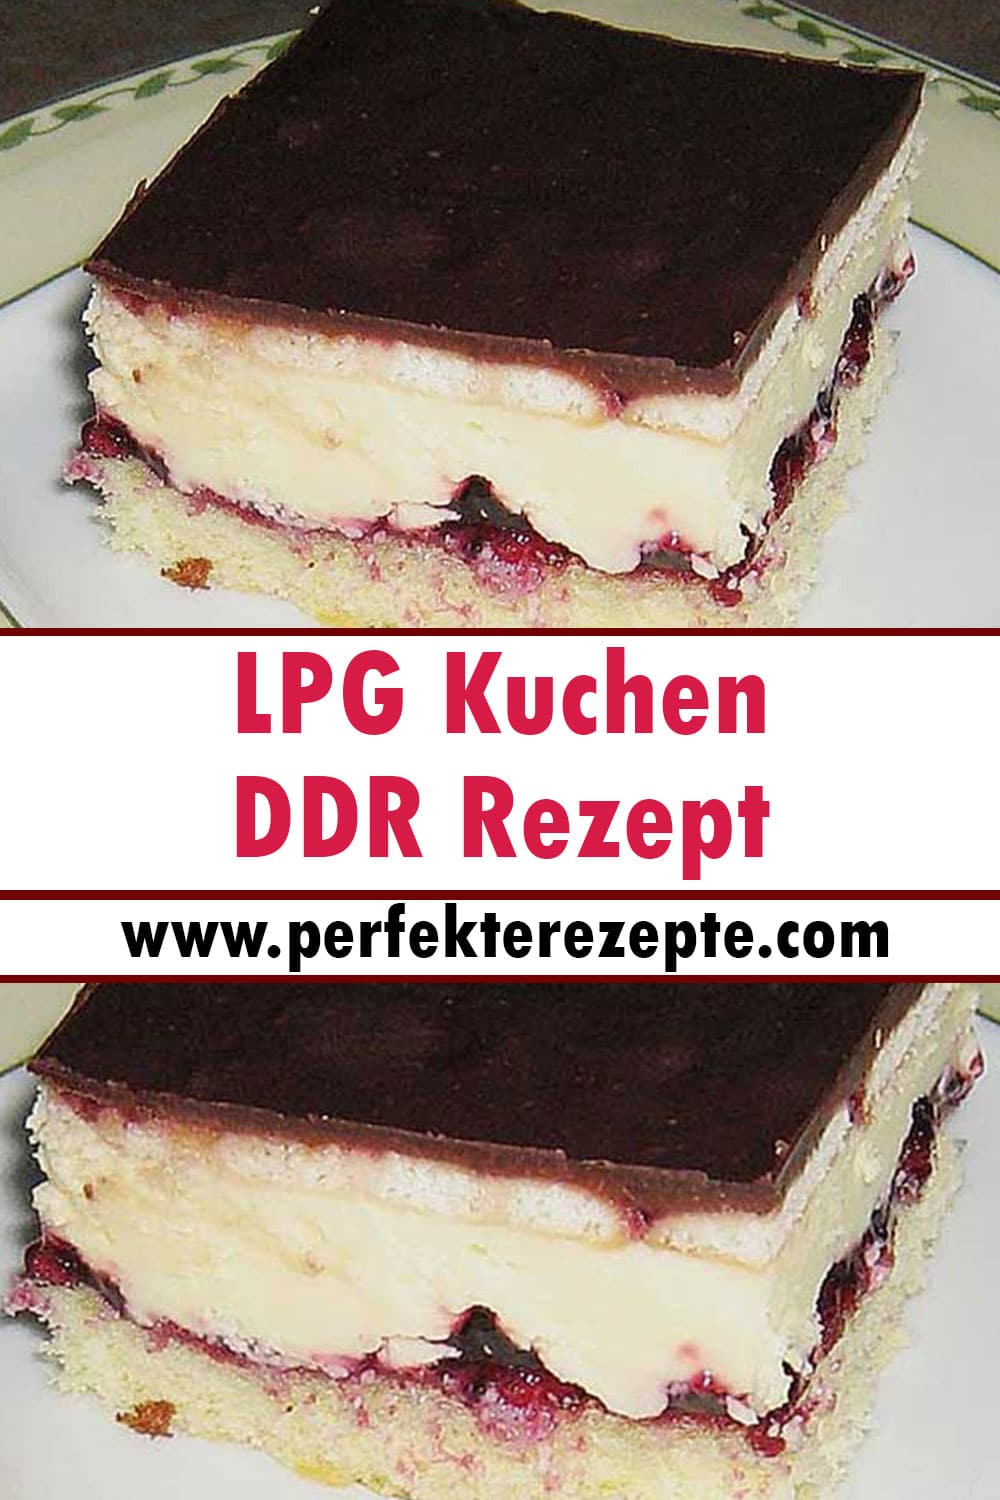 LPG Kuchen DDR Rezept